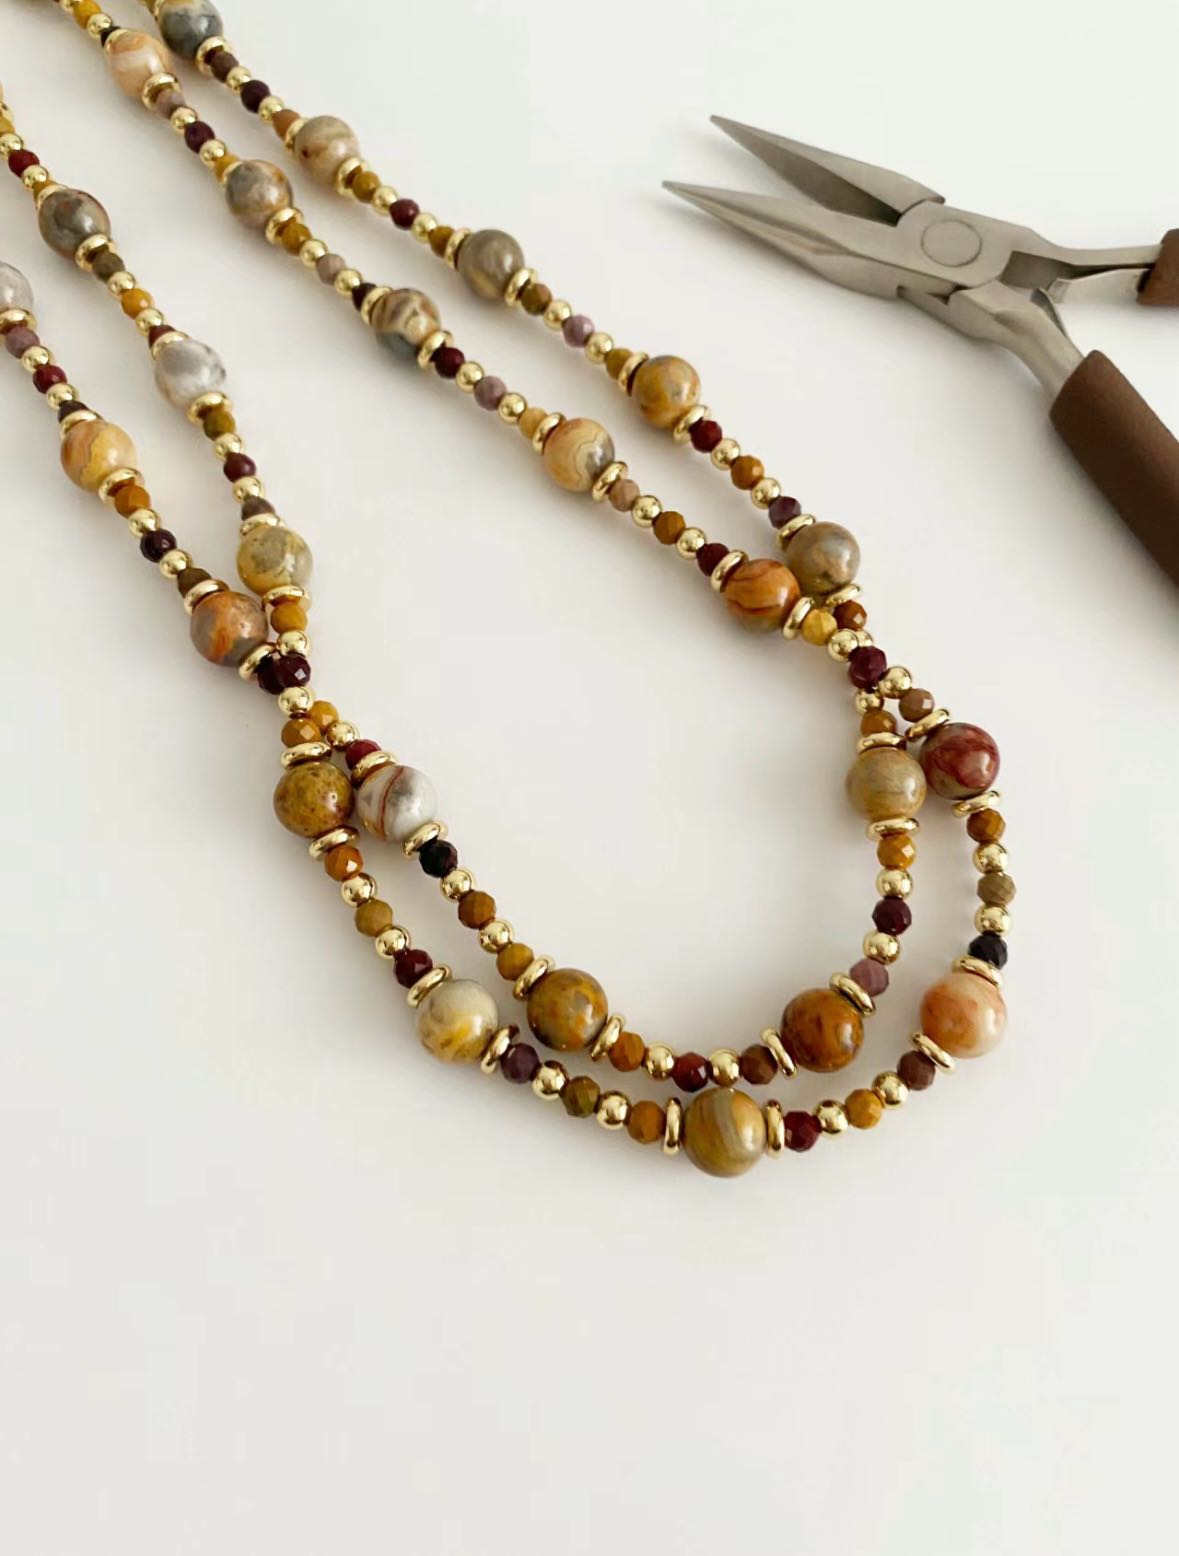 Premium Gemstone Necklace DIY